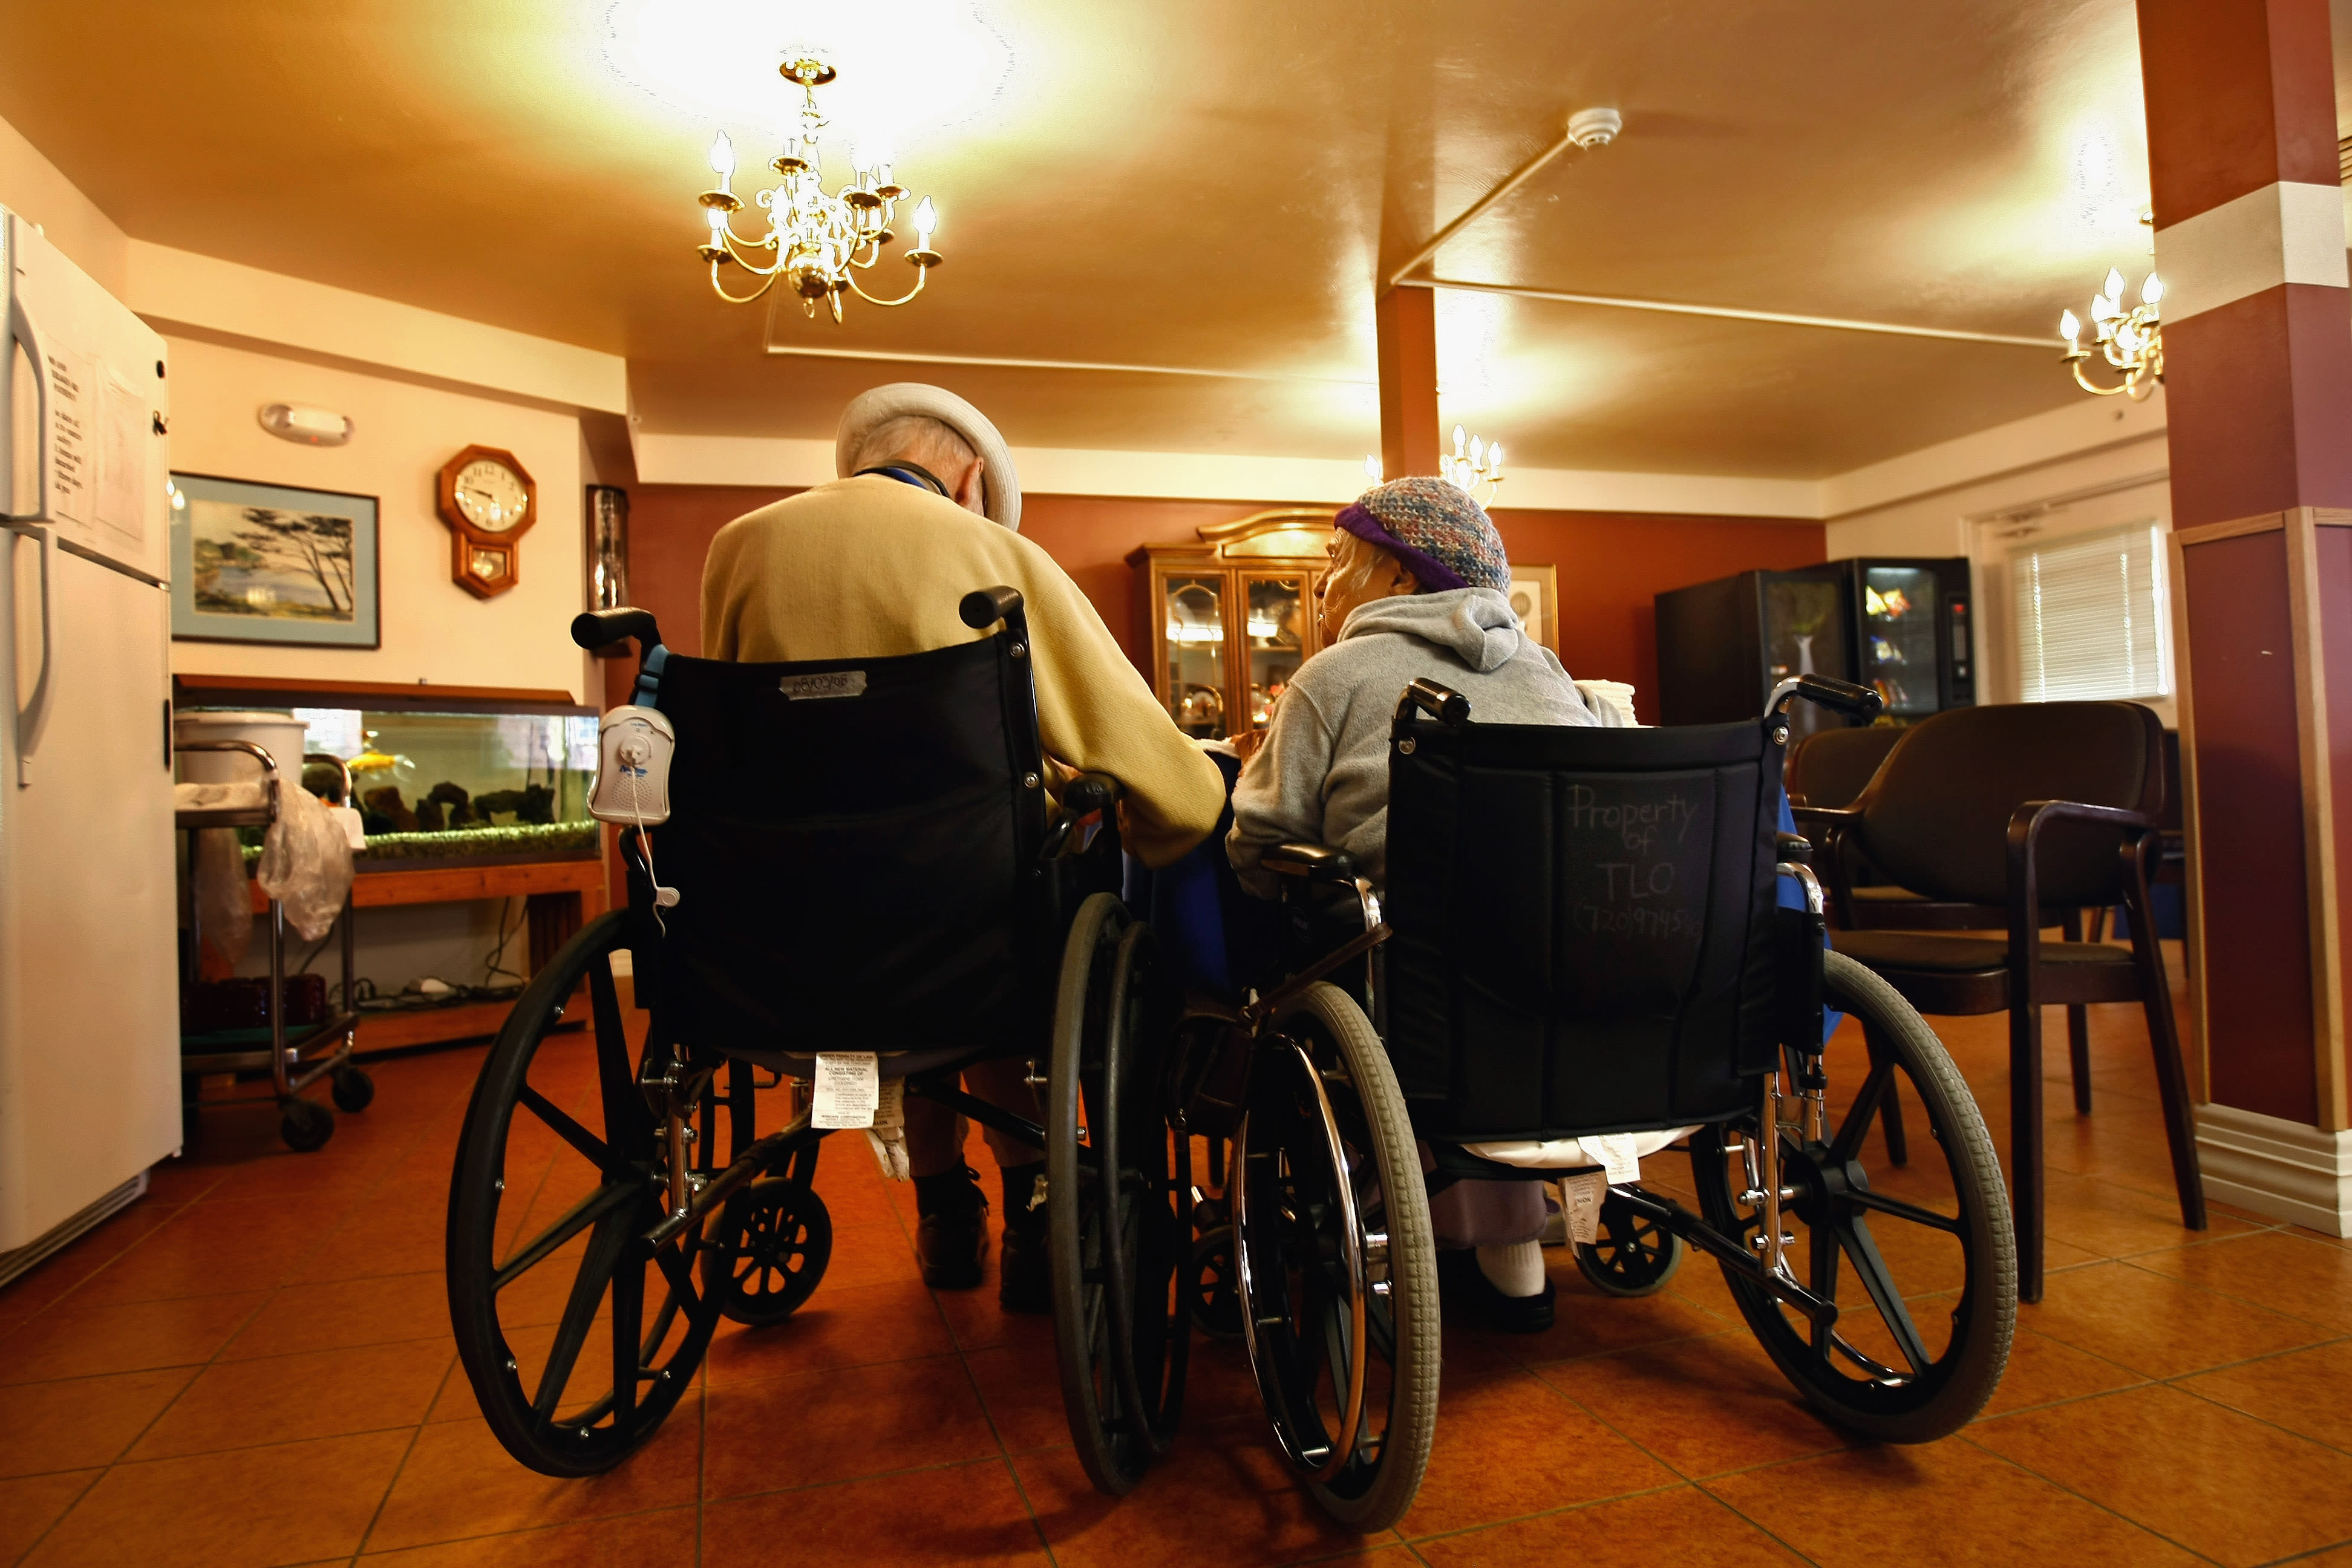 Medicare program suddenly ending leaves seniors in limbo